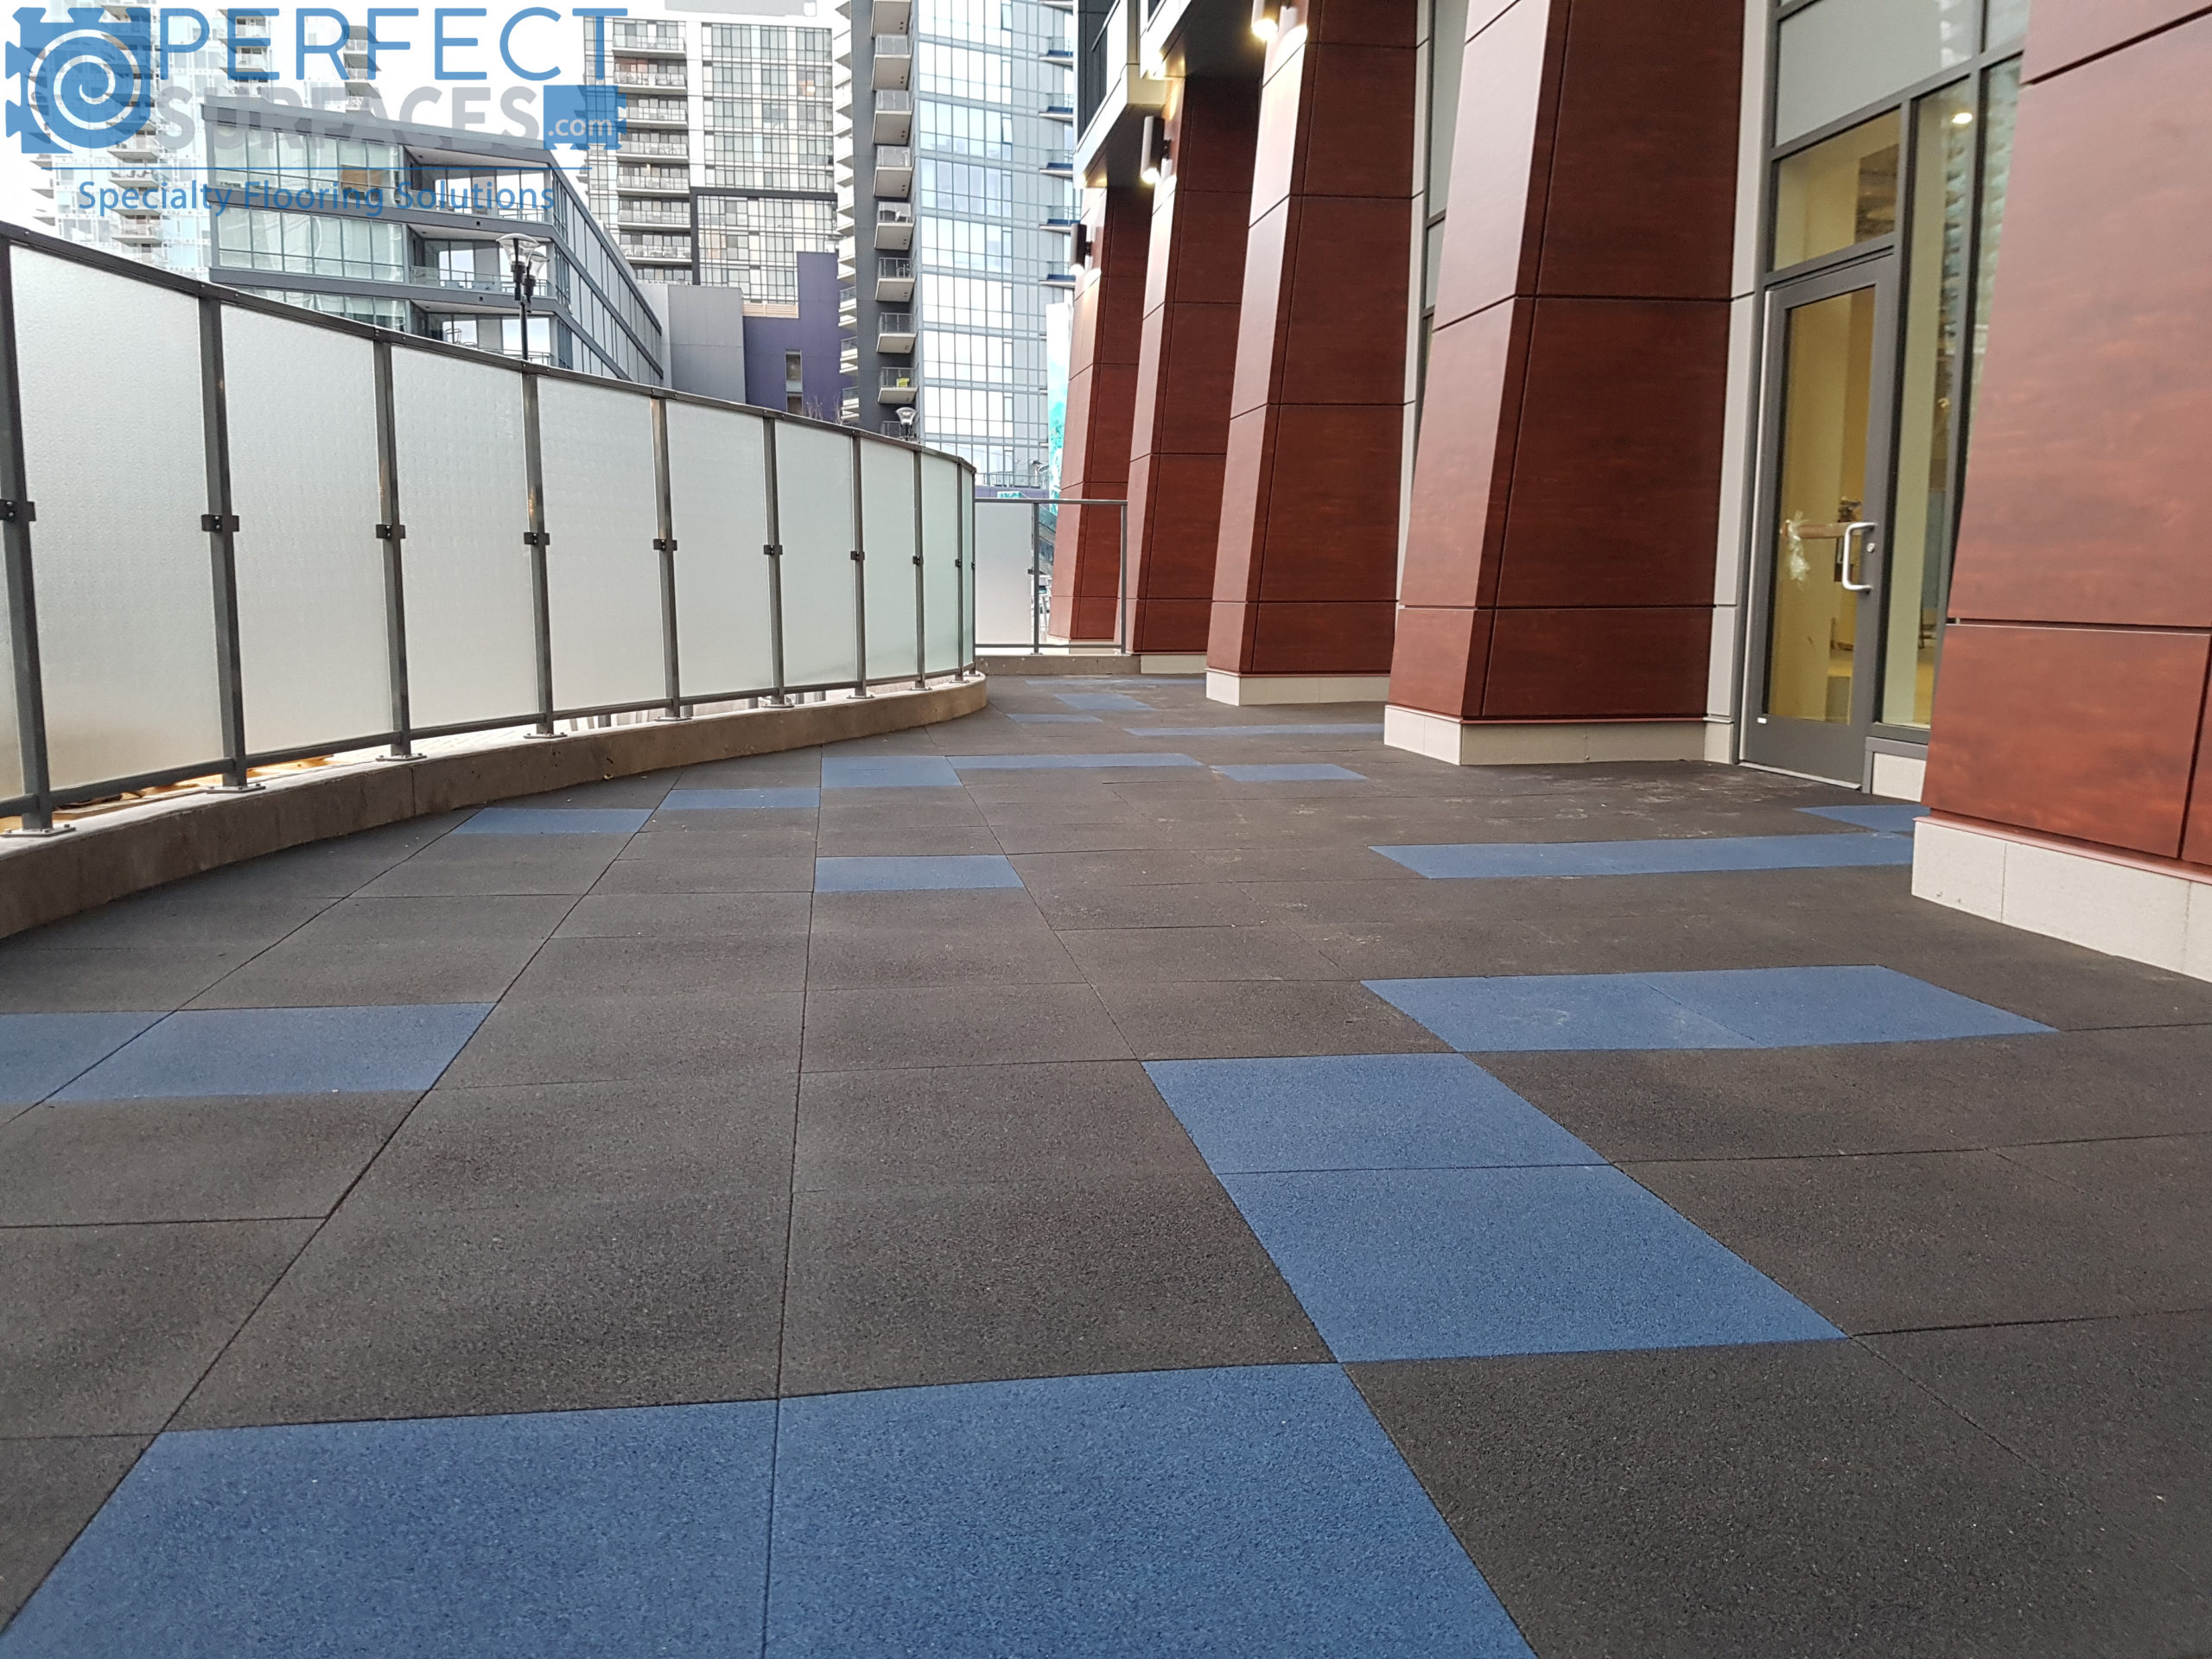 Gorillashock Deck And Patio Tile, Outdoor Carpet Tiles For Decks Canada